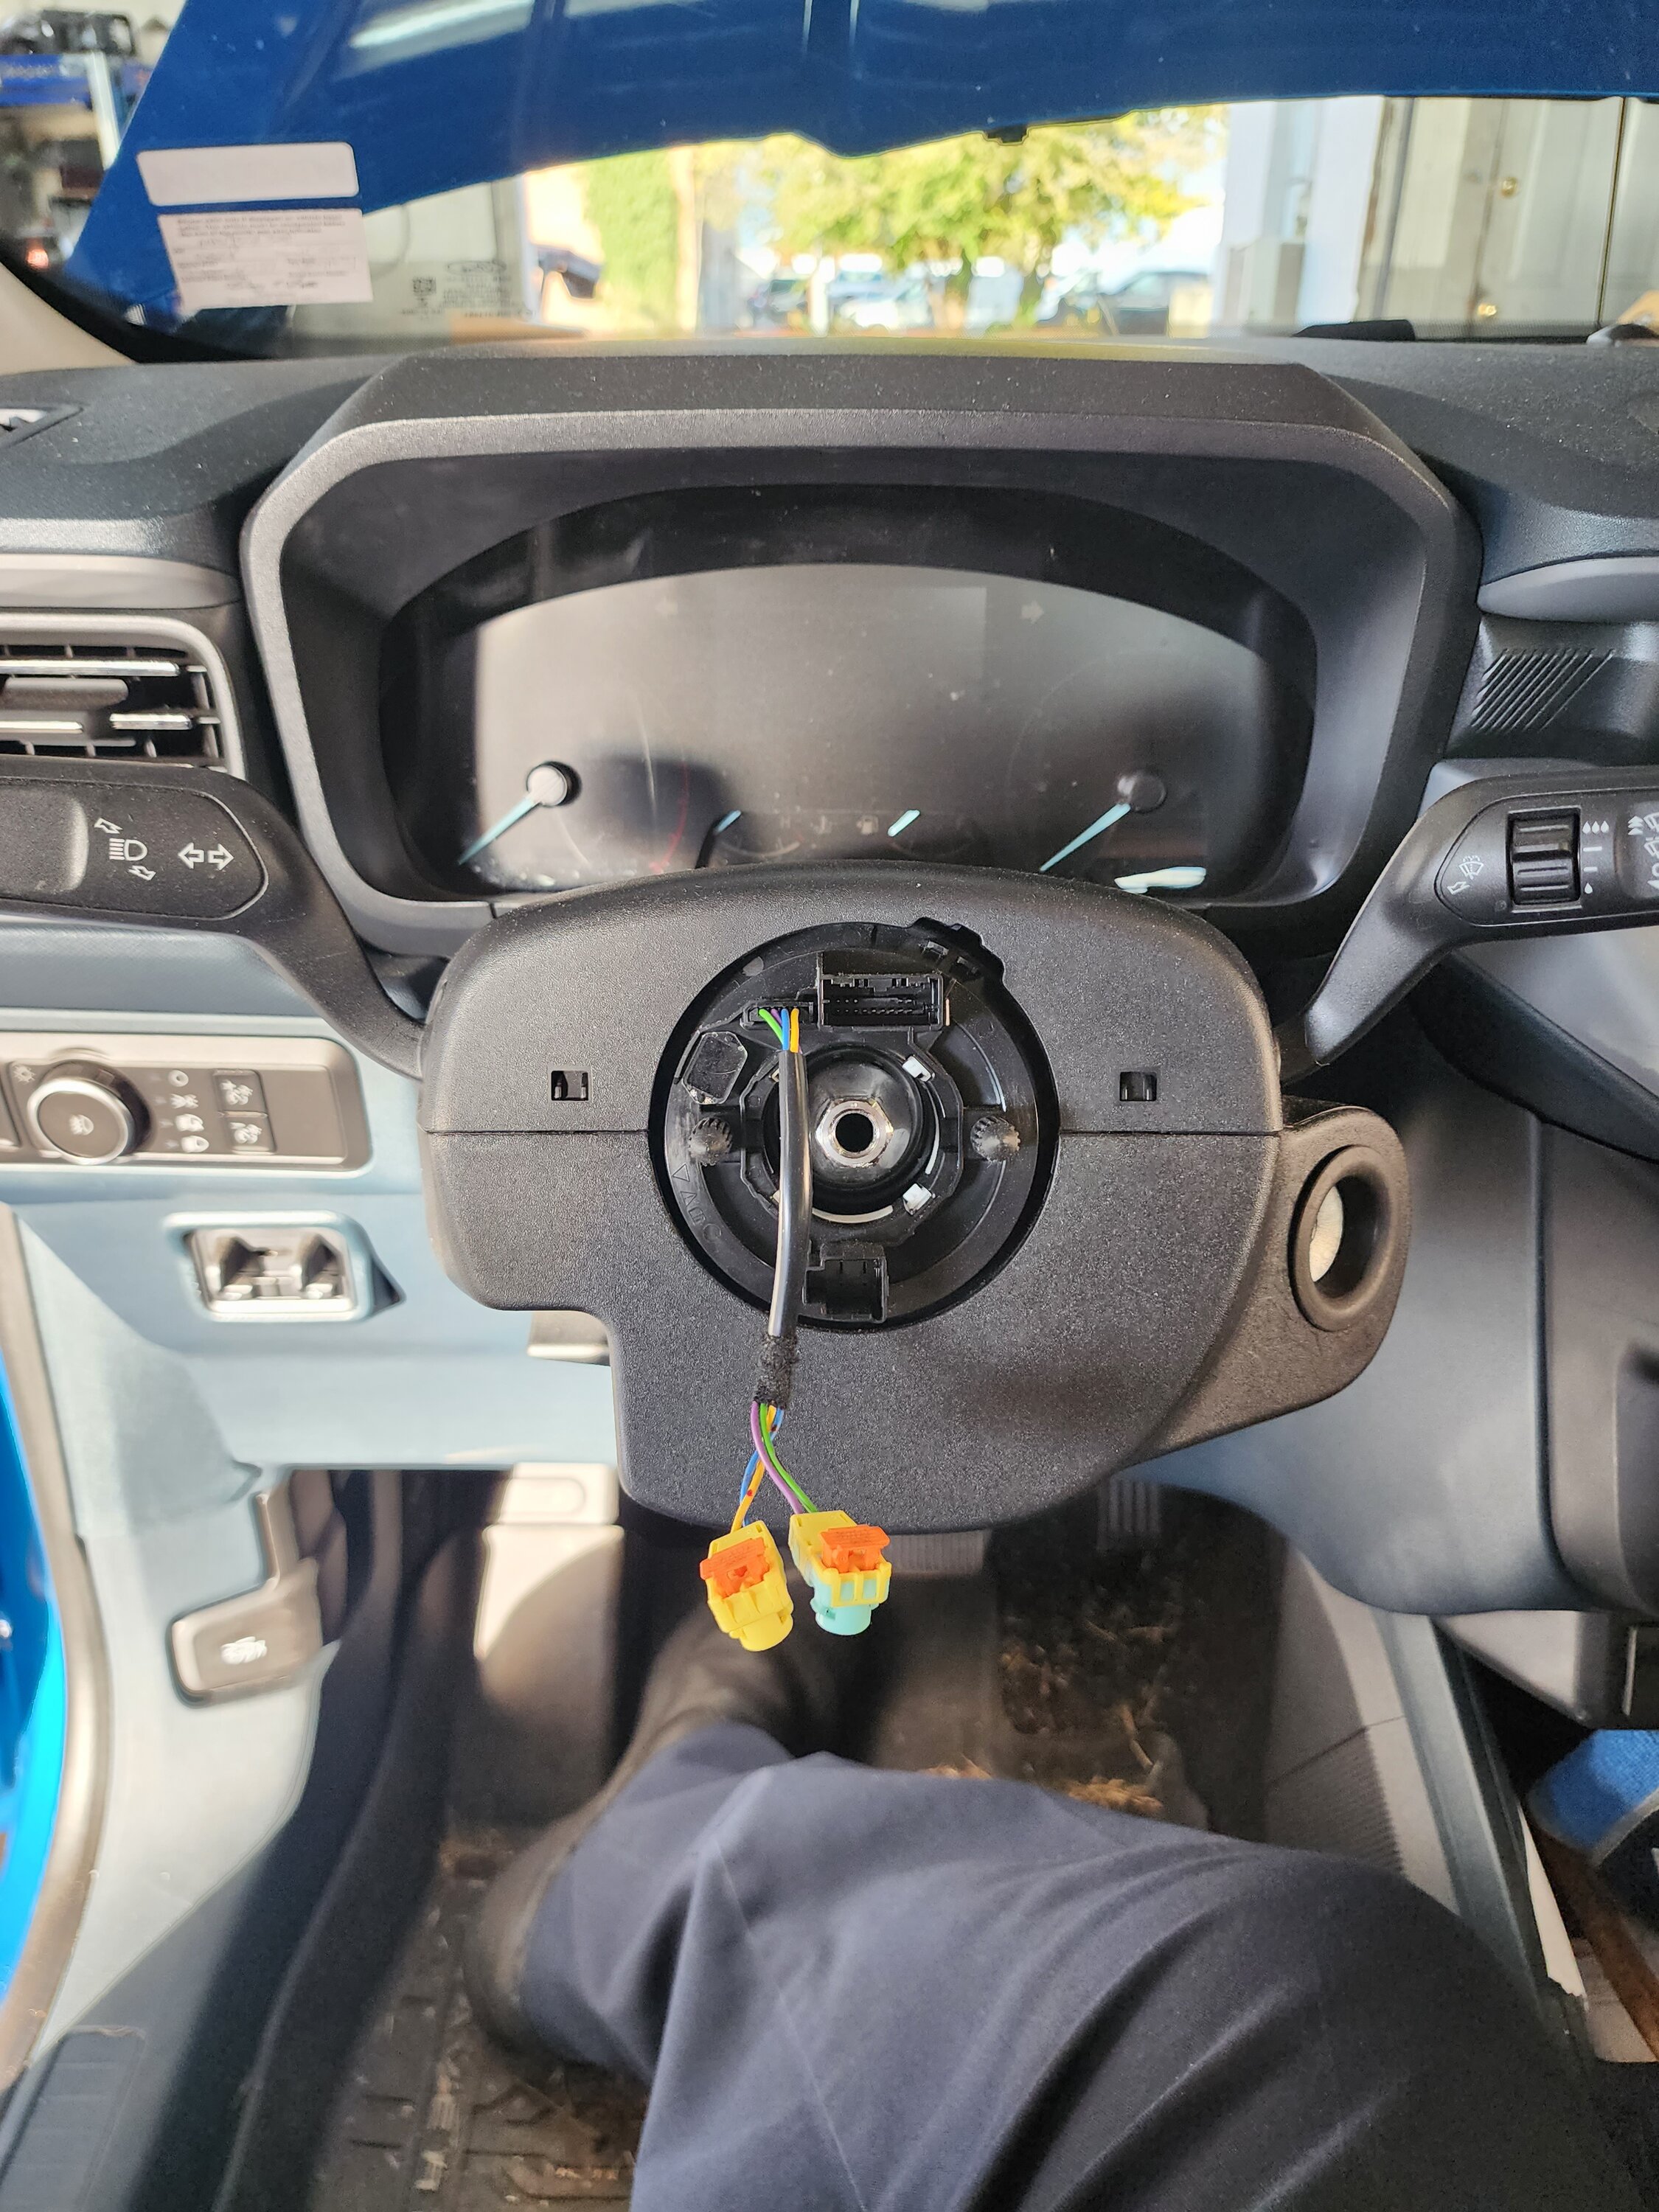 DIY Heated Steering Wheel - Step By Step 